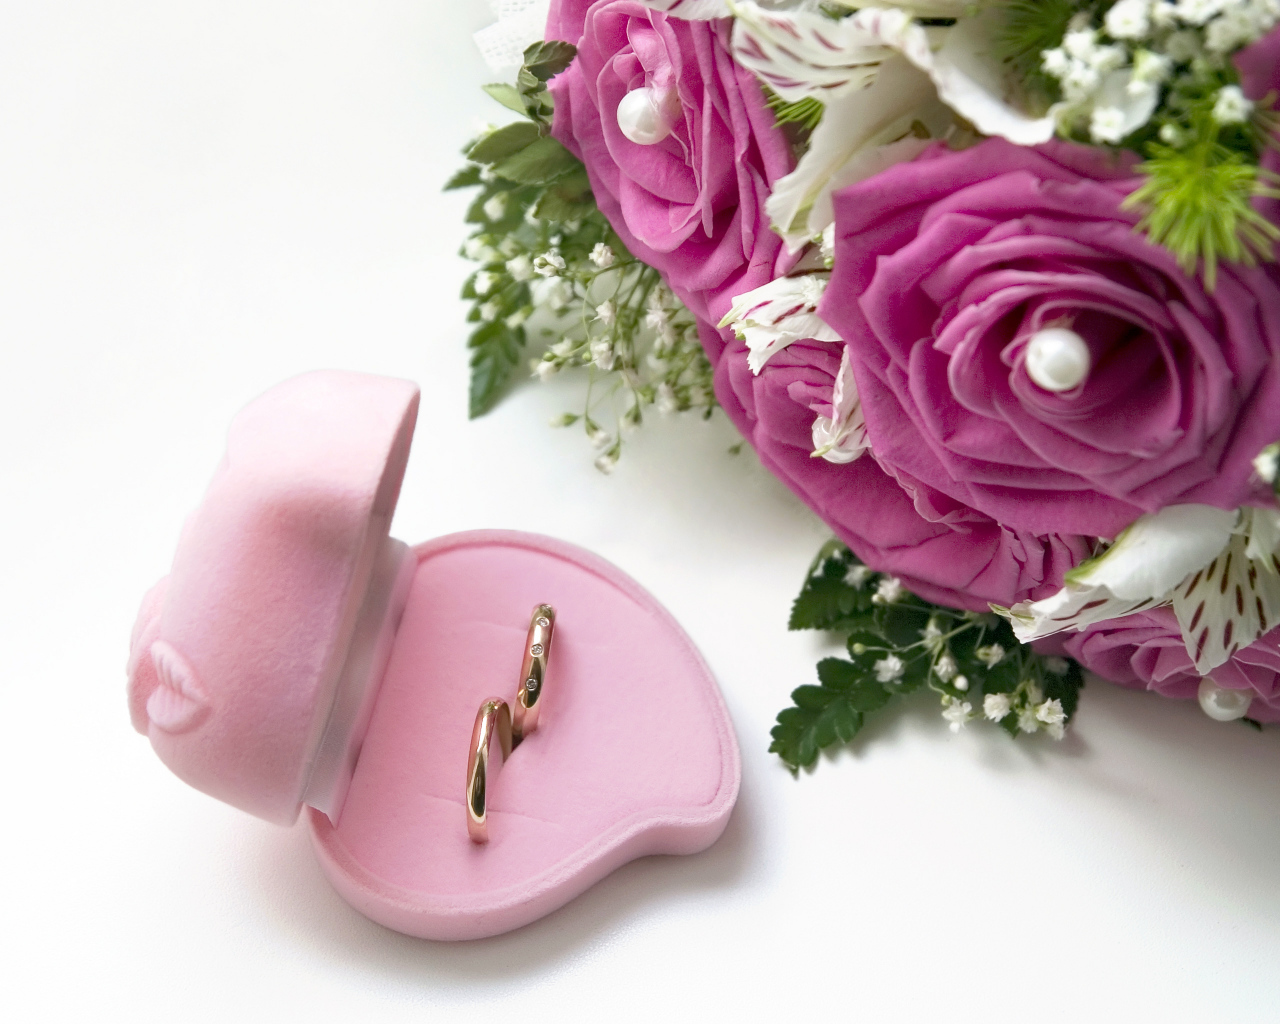 Два обручальных кольца в коробочке на белом фоне с букетом роз